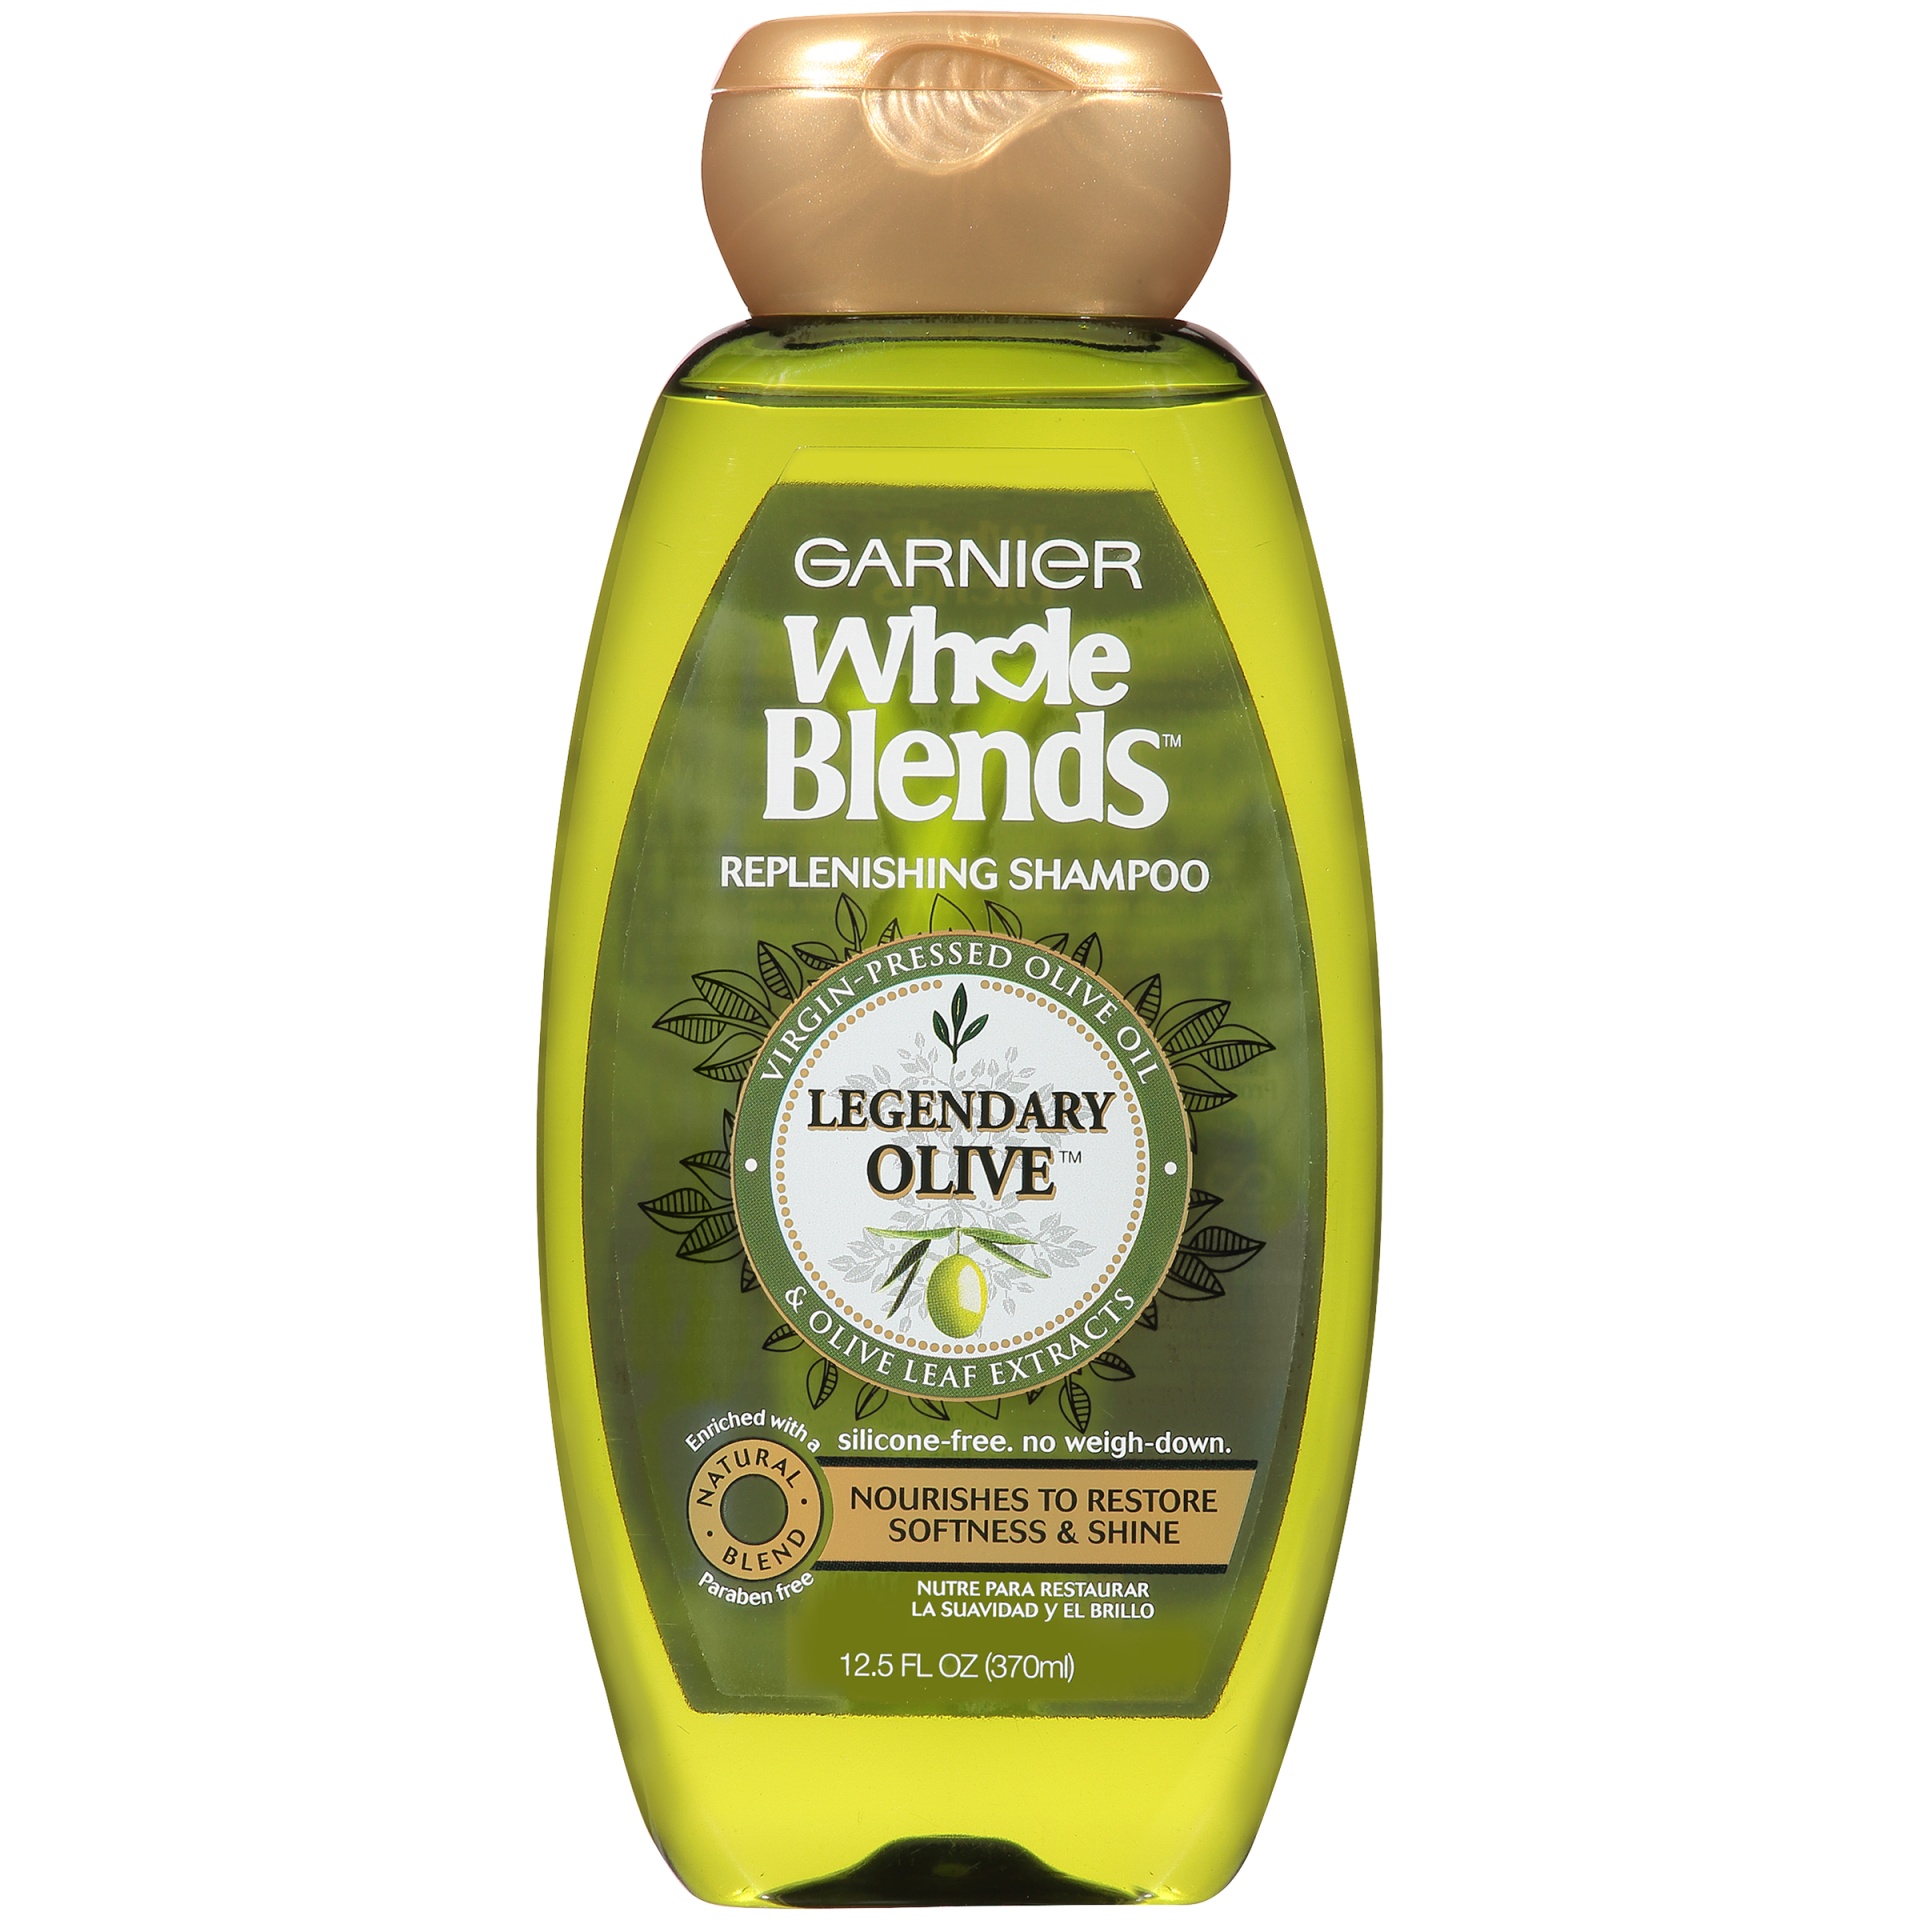 slide 2 of 6, Garnier Whole Blends Legendary Olive Replenishing Shampoo, 12.5 fl oz